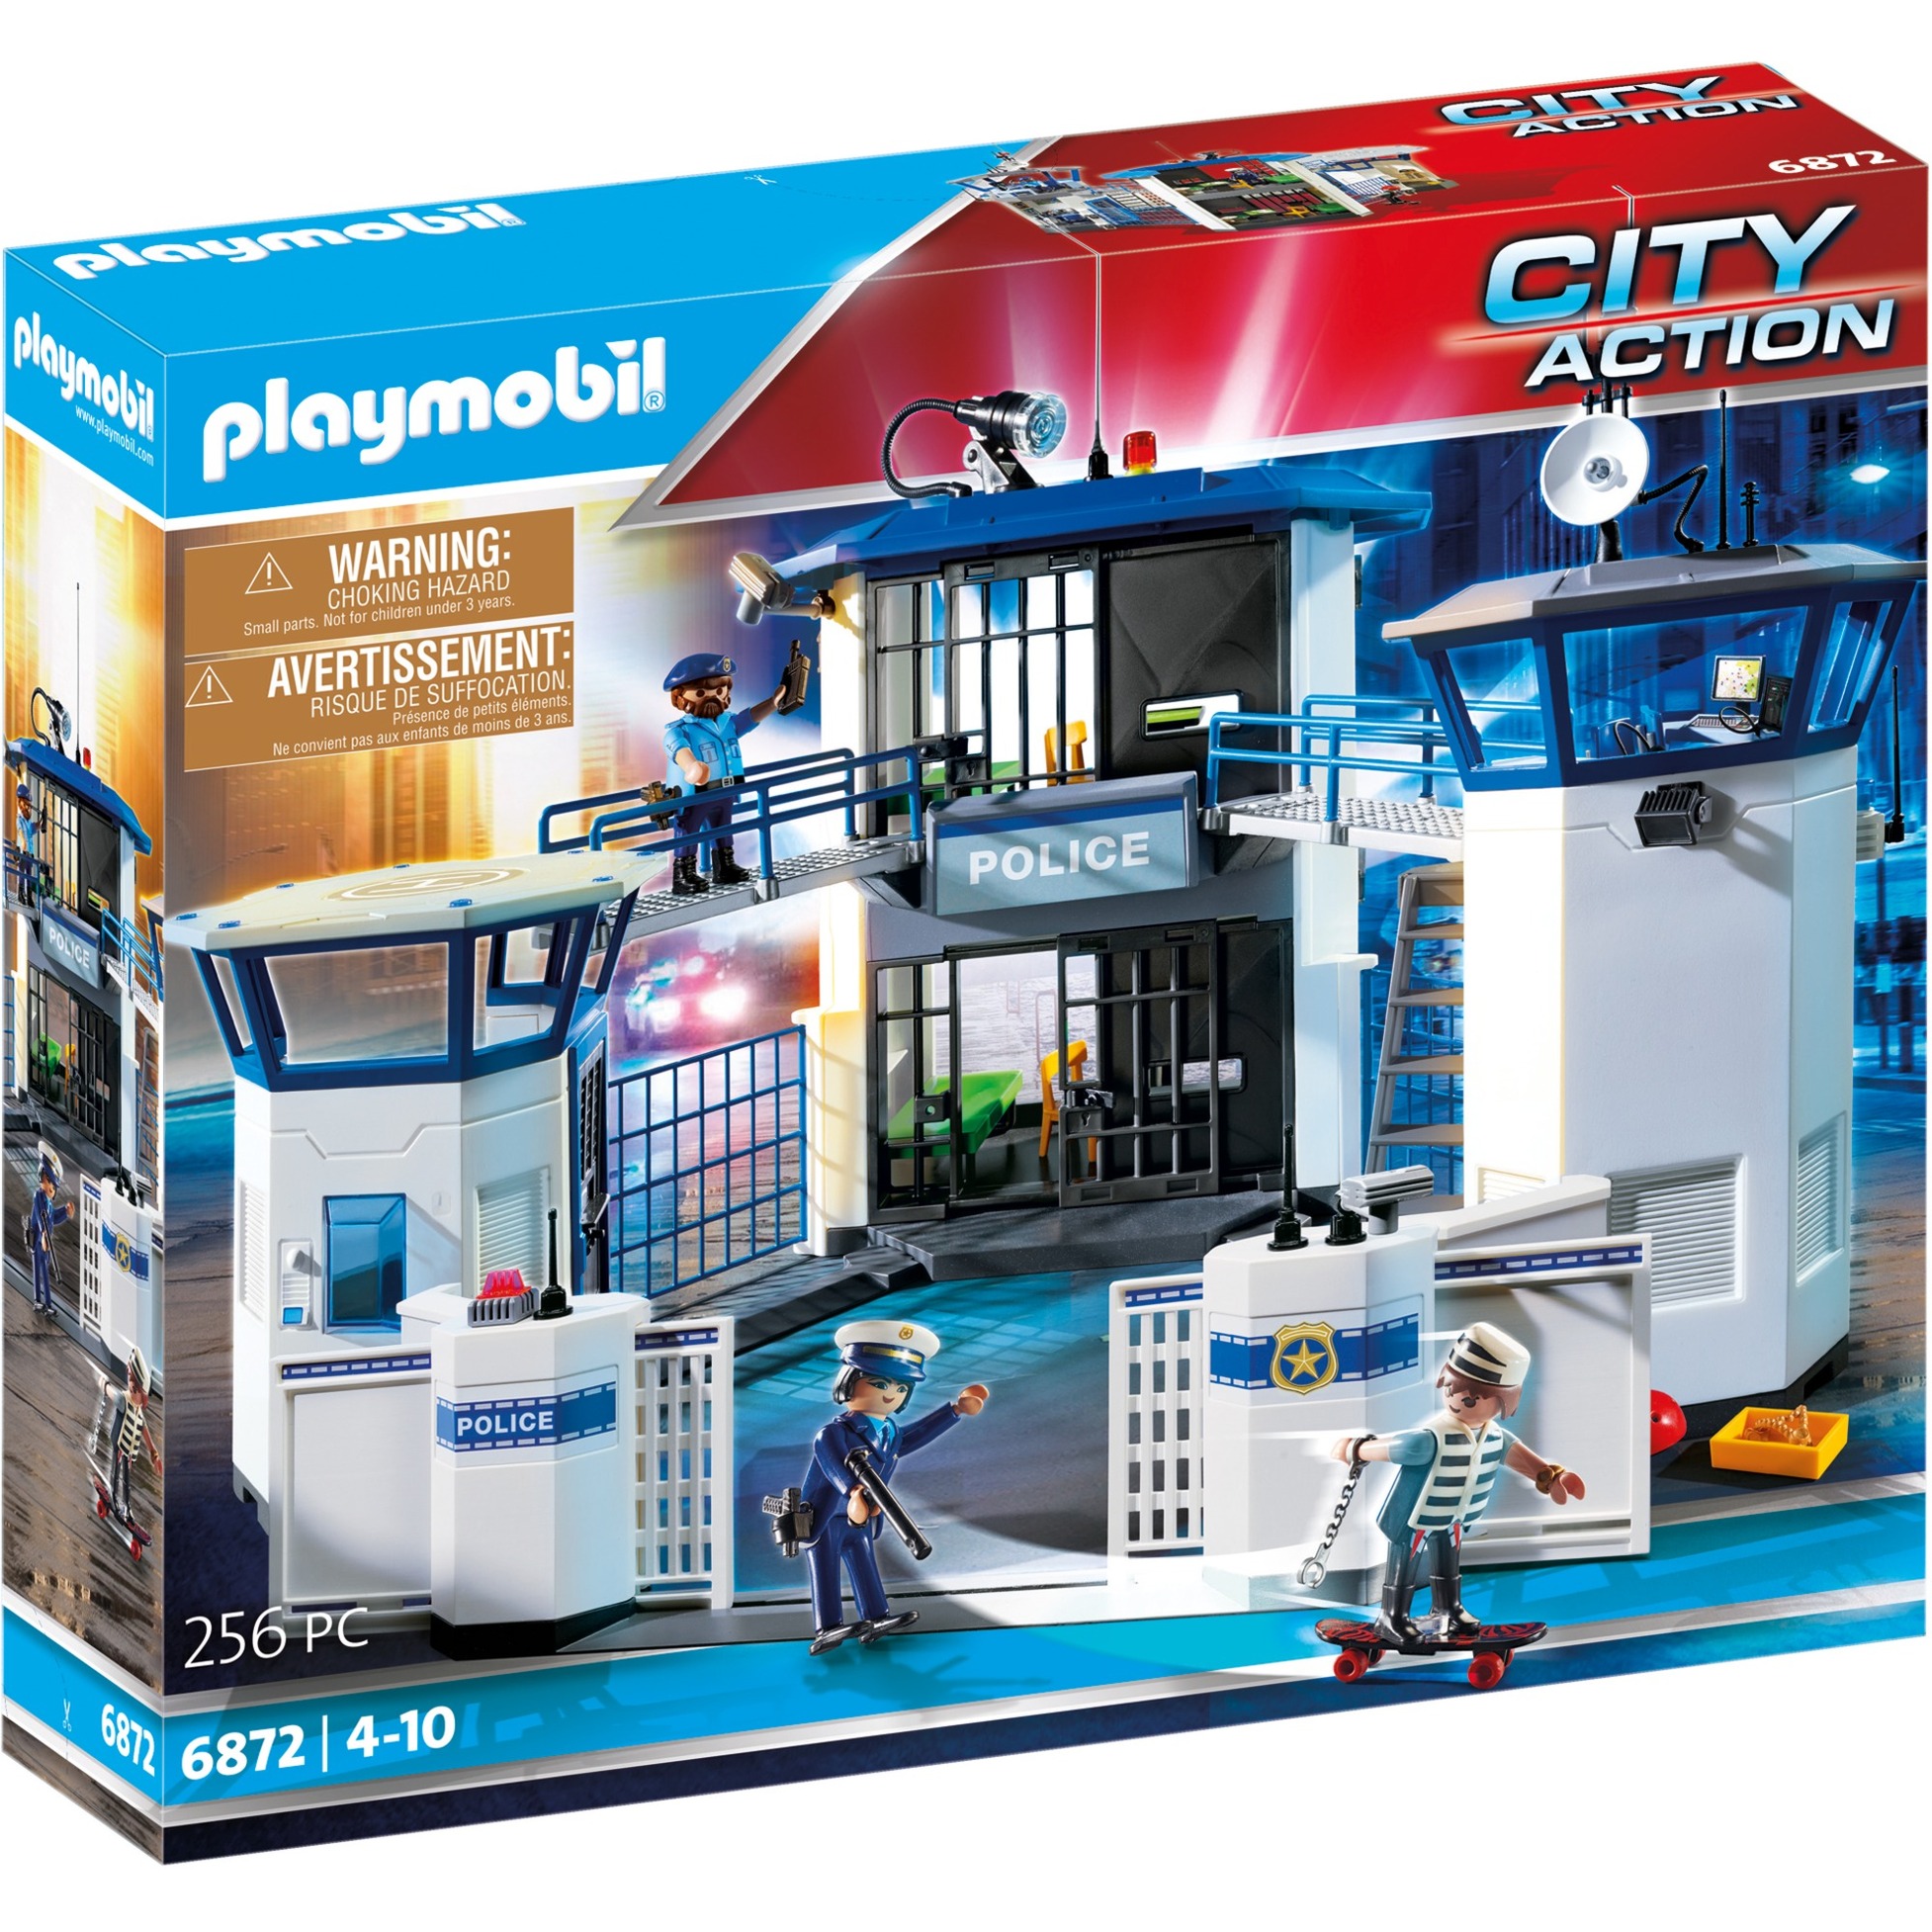 Spielzeug: PLAYMOBIL 6872 City Action - Polizei-Kommandozentrale mit Gefängnis